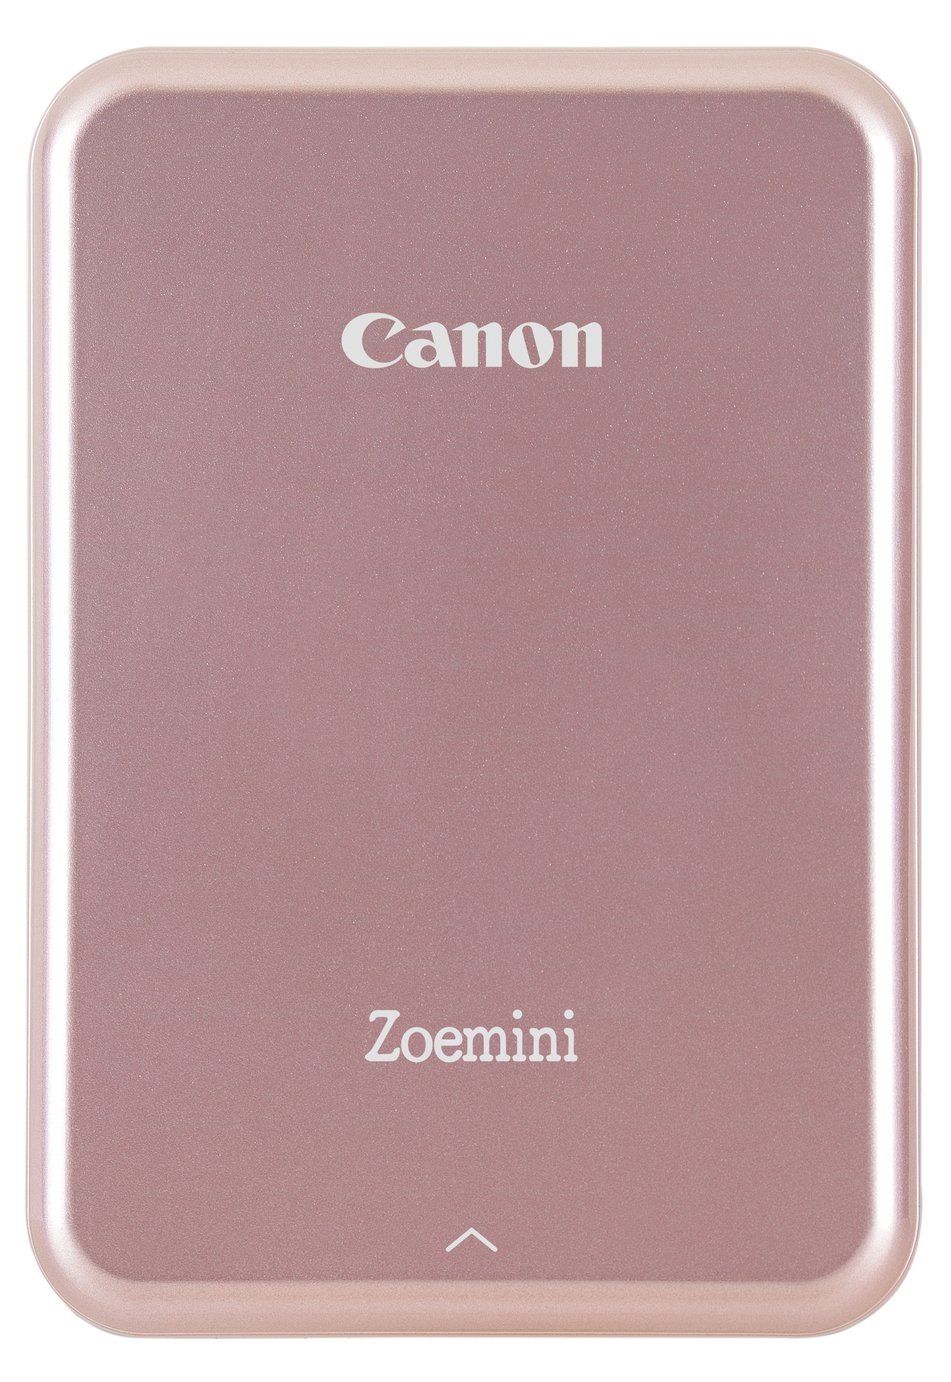 Canon Zoemini Photo Printer - Rose Gold